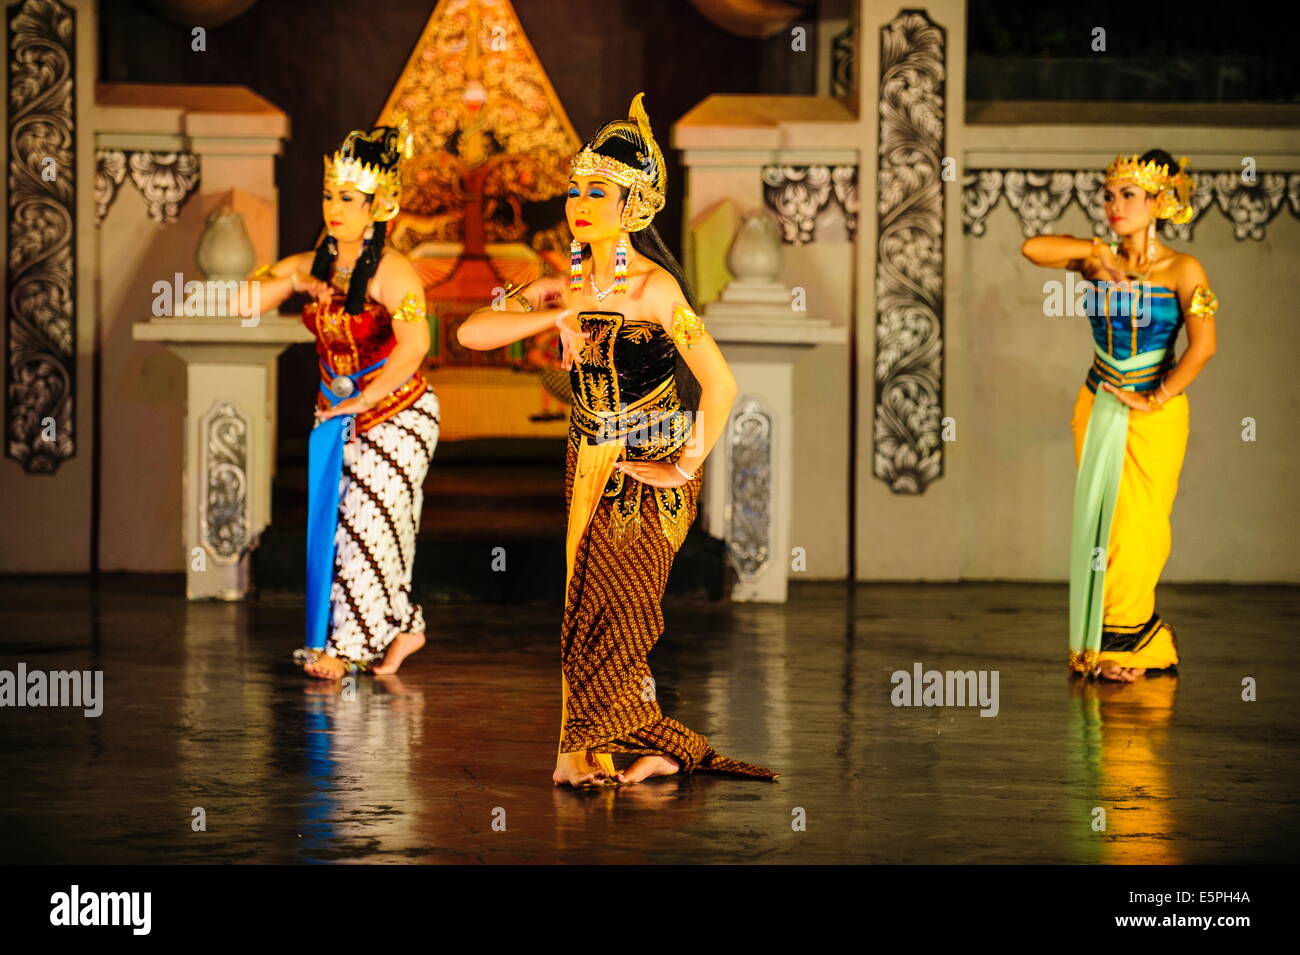 Danseurs dans une danse traditionnel javanais, Yogyakarta, Java, Indonésie, Asie du Sud, Asie Banque D'Images